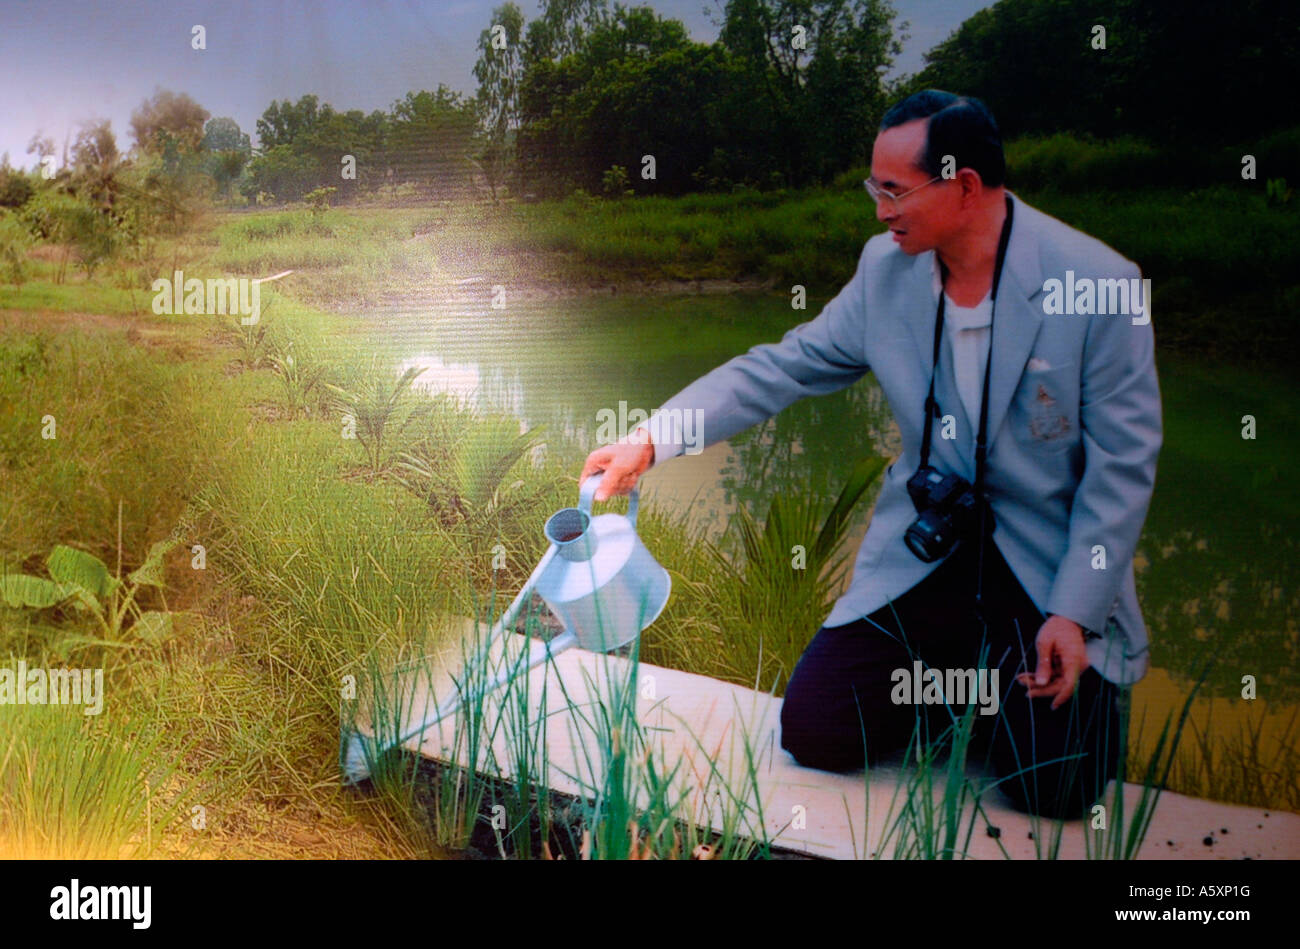 Un panneau montrant le Roi de Thaïlande, Bhumibol Adulyadej, développant des techniques d'irrigation pour son peuple. Banque D'Images